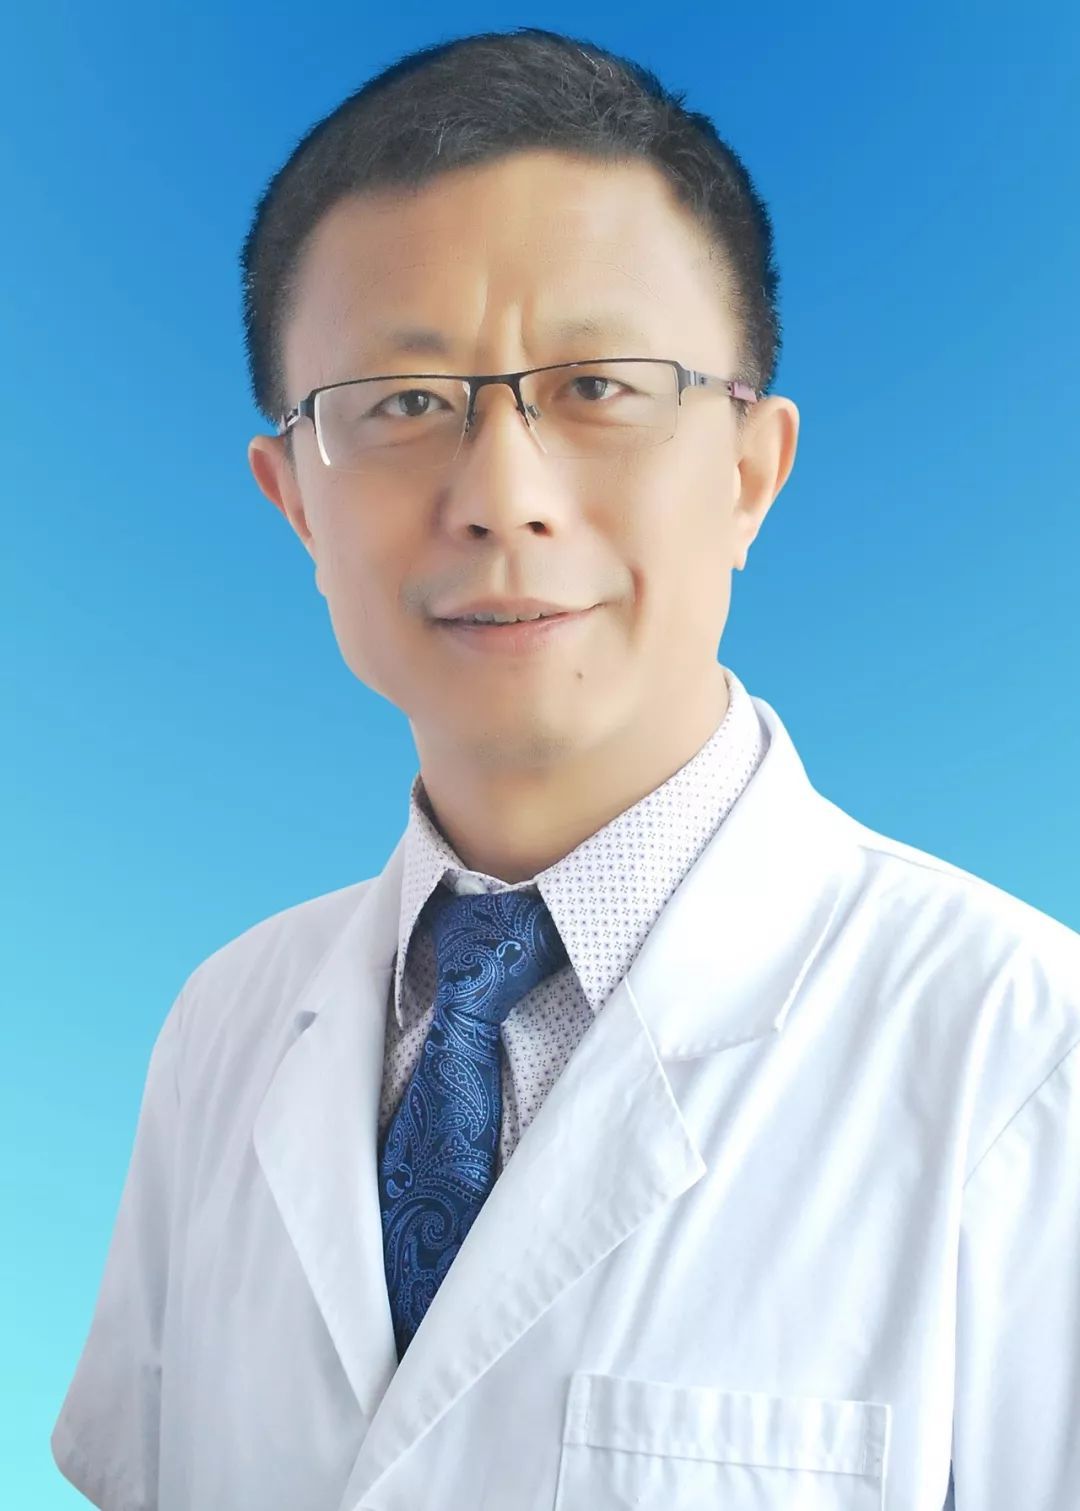 北京肿瘤医院内科专家名单-北京肿瘤医院内科专家名单最新